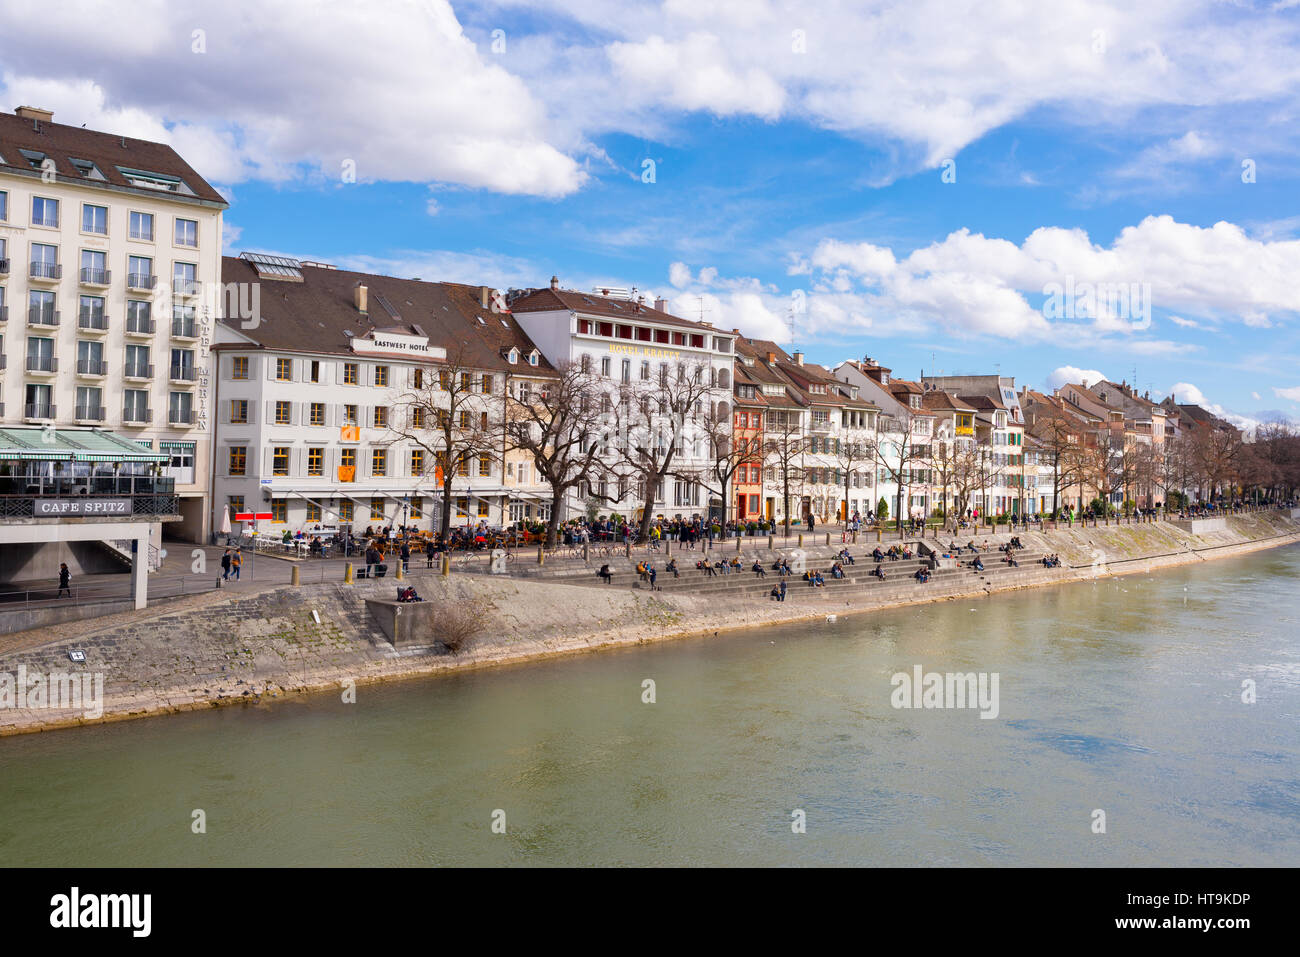 Riverside de Bâle, Suisse avec de vieux bâtiments médiévaux, cafés et restaurants Banque D'Images